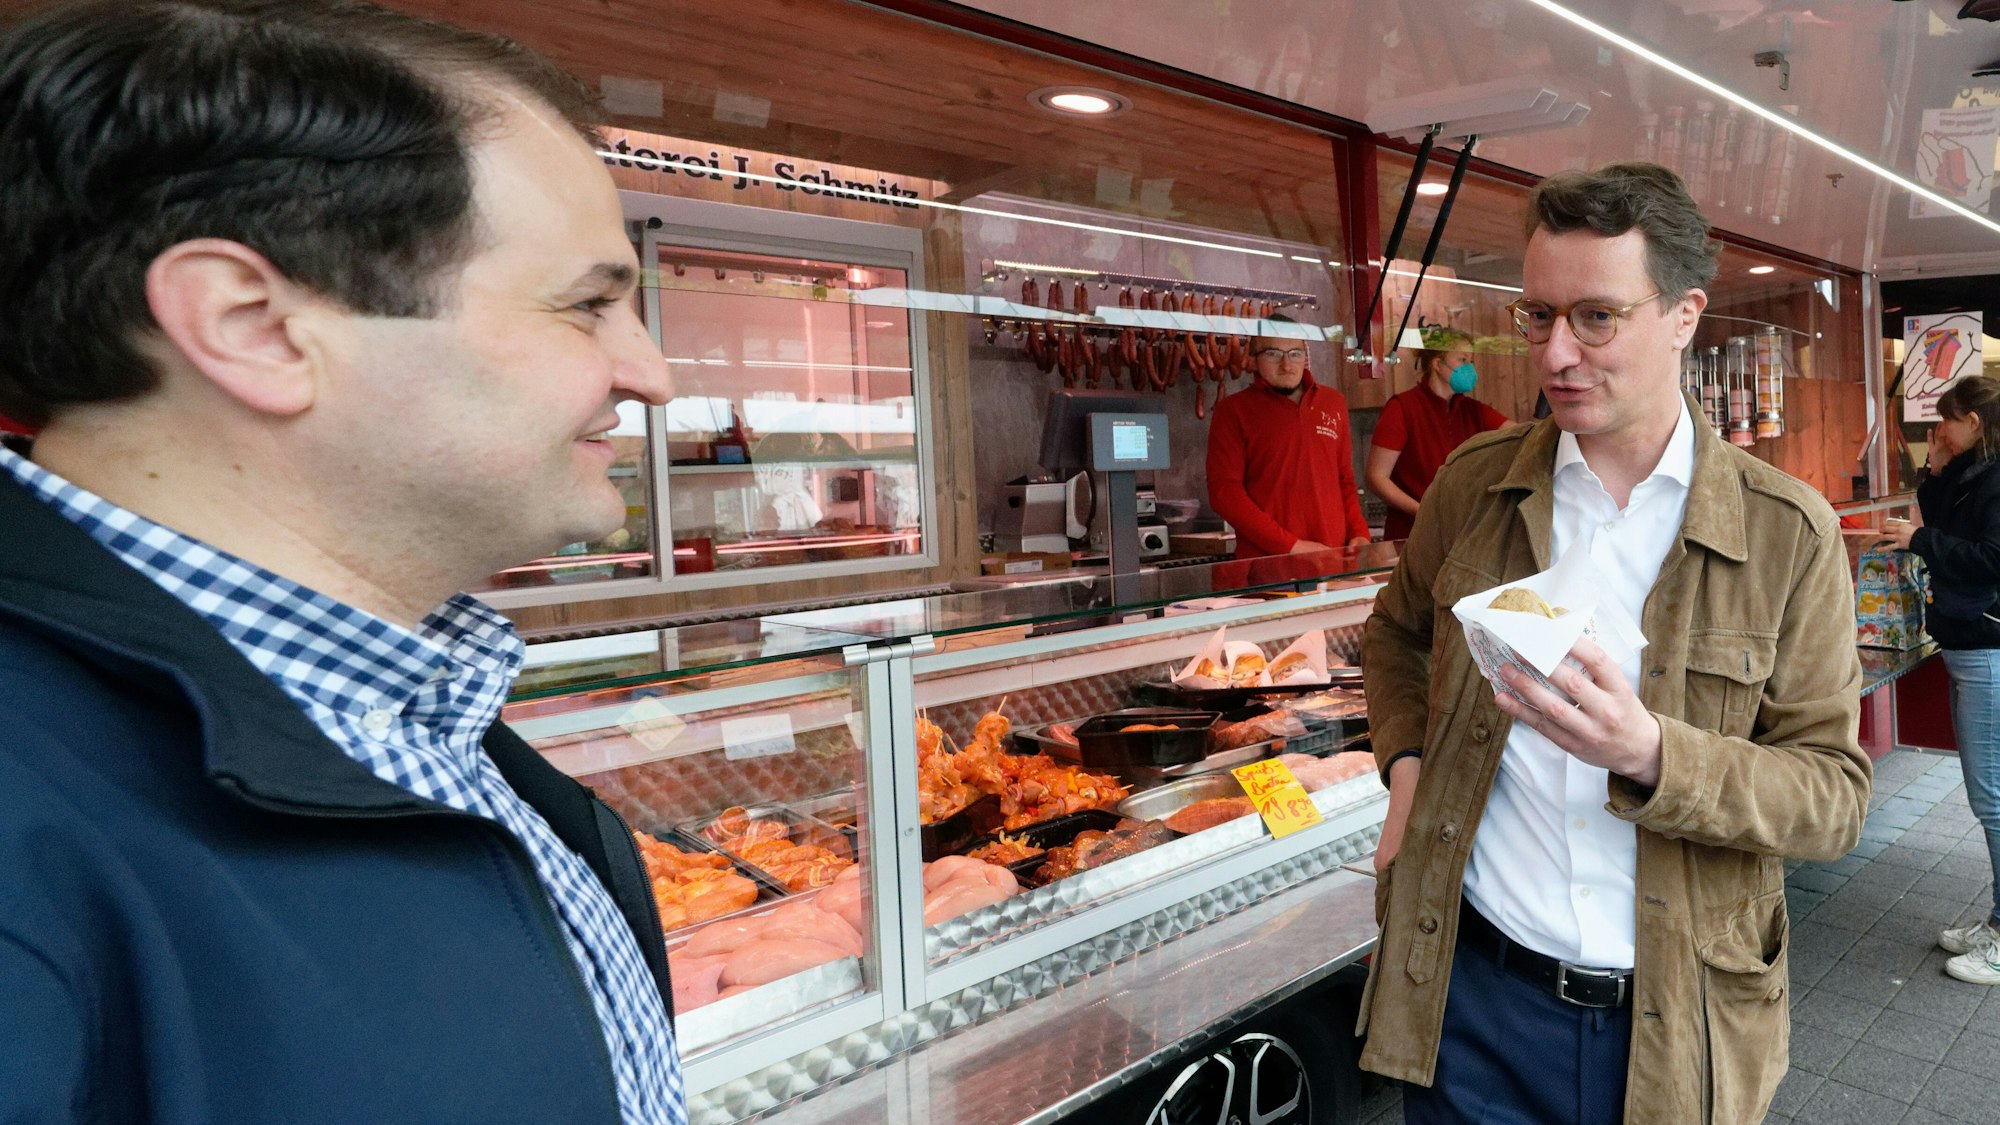 Hendrik Wüst, Spitzenkandidat der CDU zur Landtagwahl (r) und Landtagskandidat Nathanael Liminski (l), sprechen auf dem Markt auf dem Neptunplatz in Köln mit Marktbesuchern.